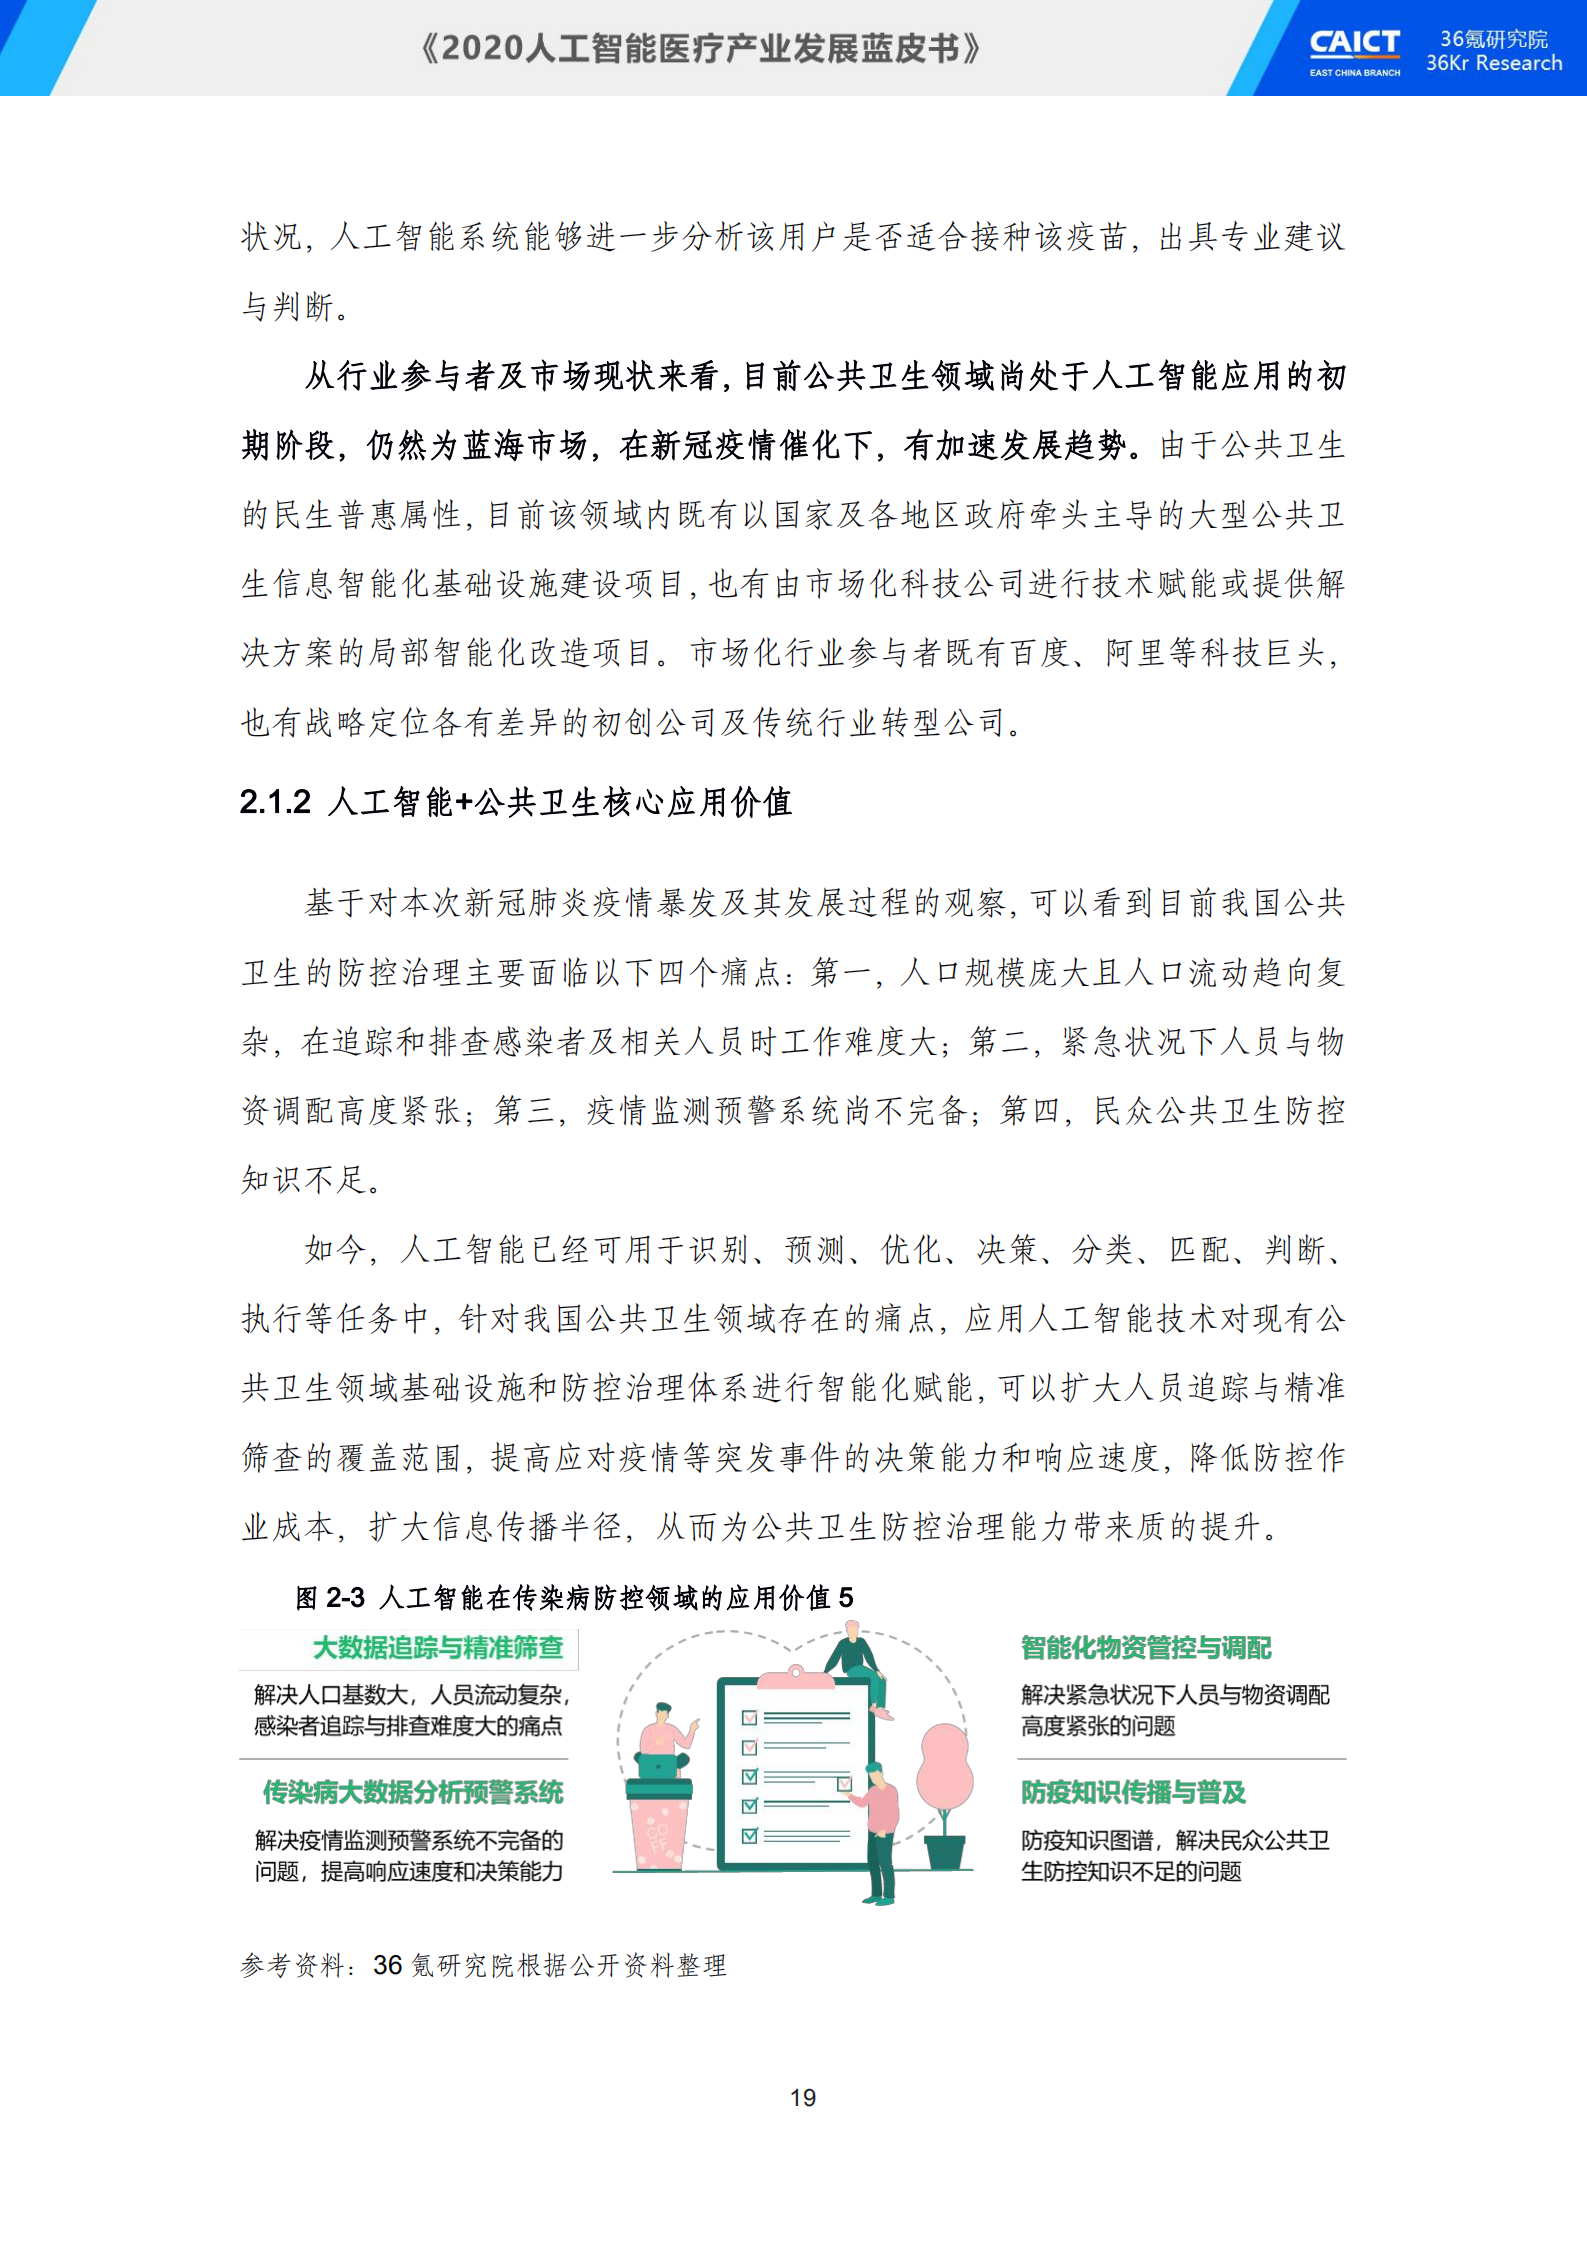 中国信通院联合36氪研究院重磅发布《2020人工智能医疗产业发展蓝皮书》